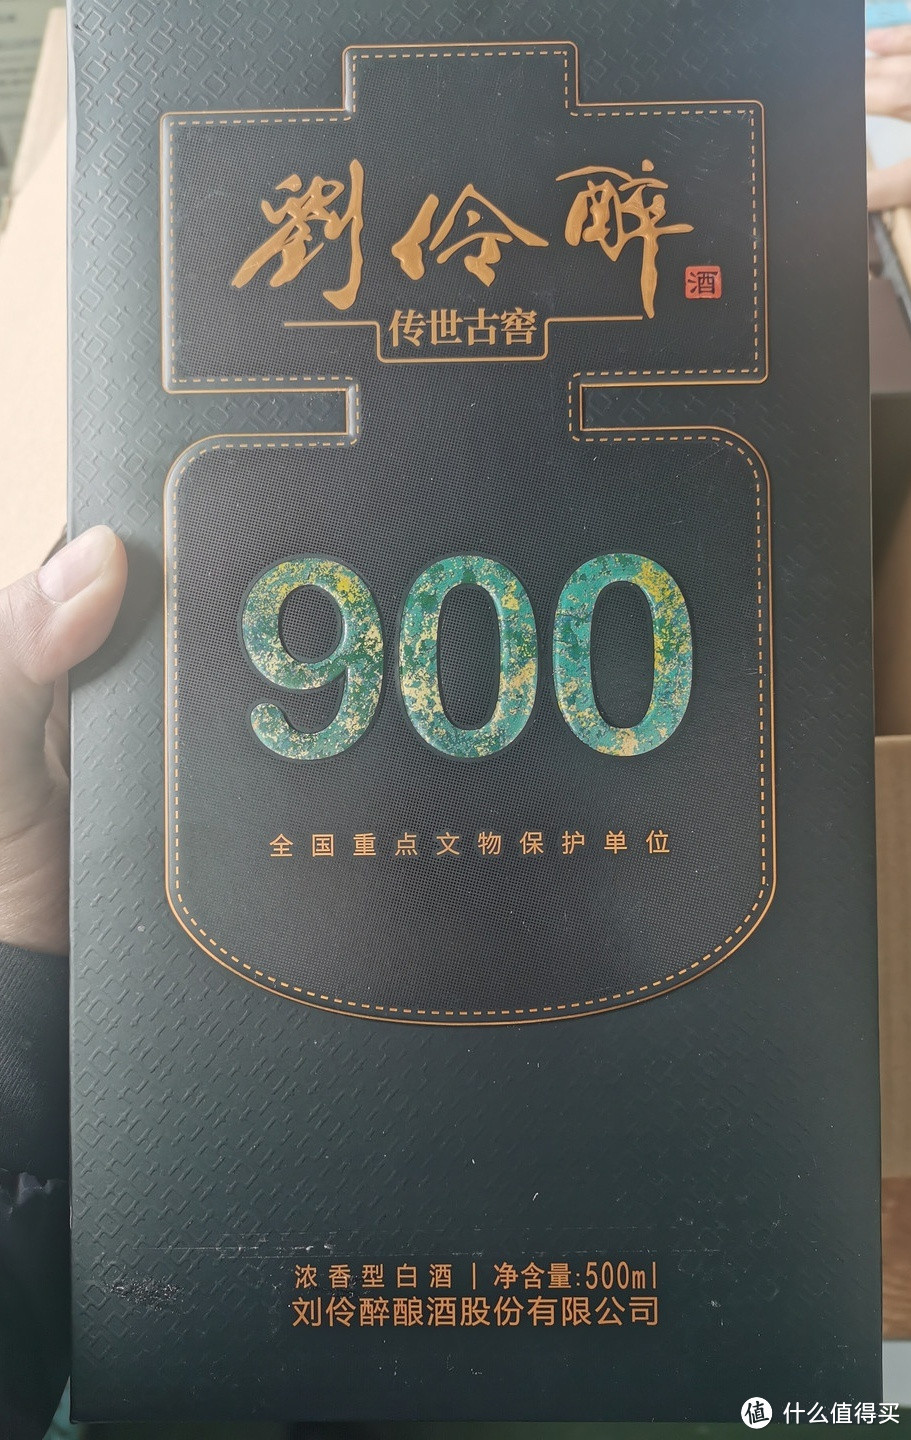 河北地方酒之刘伶醉传世古窖900